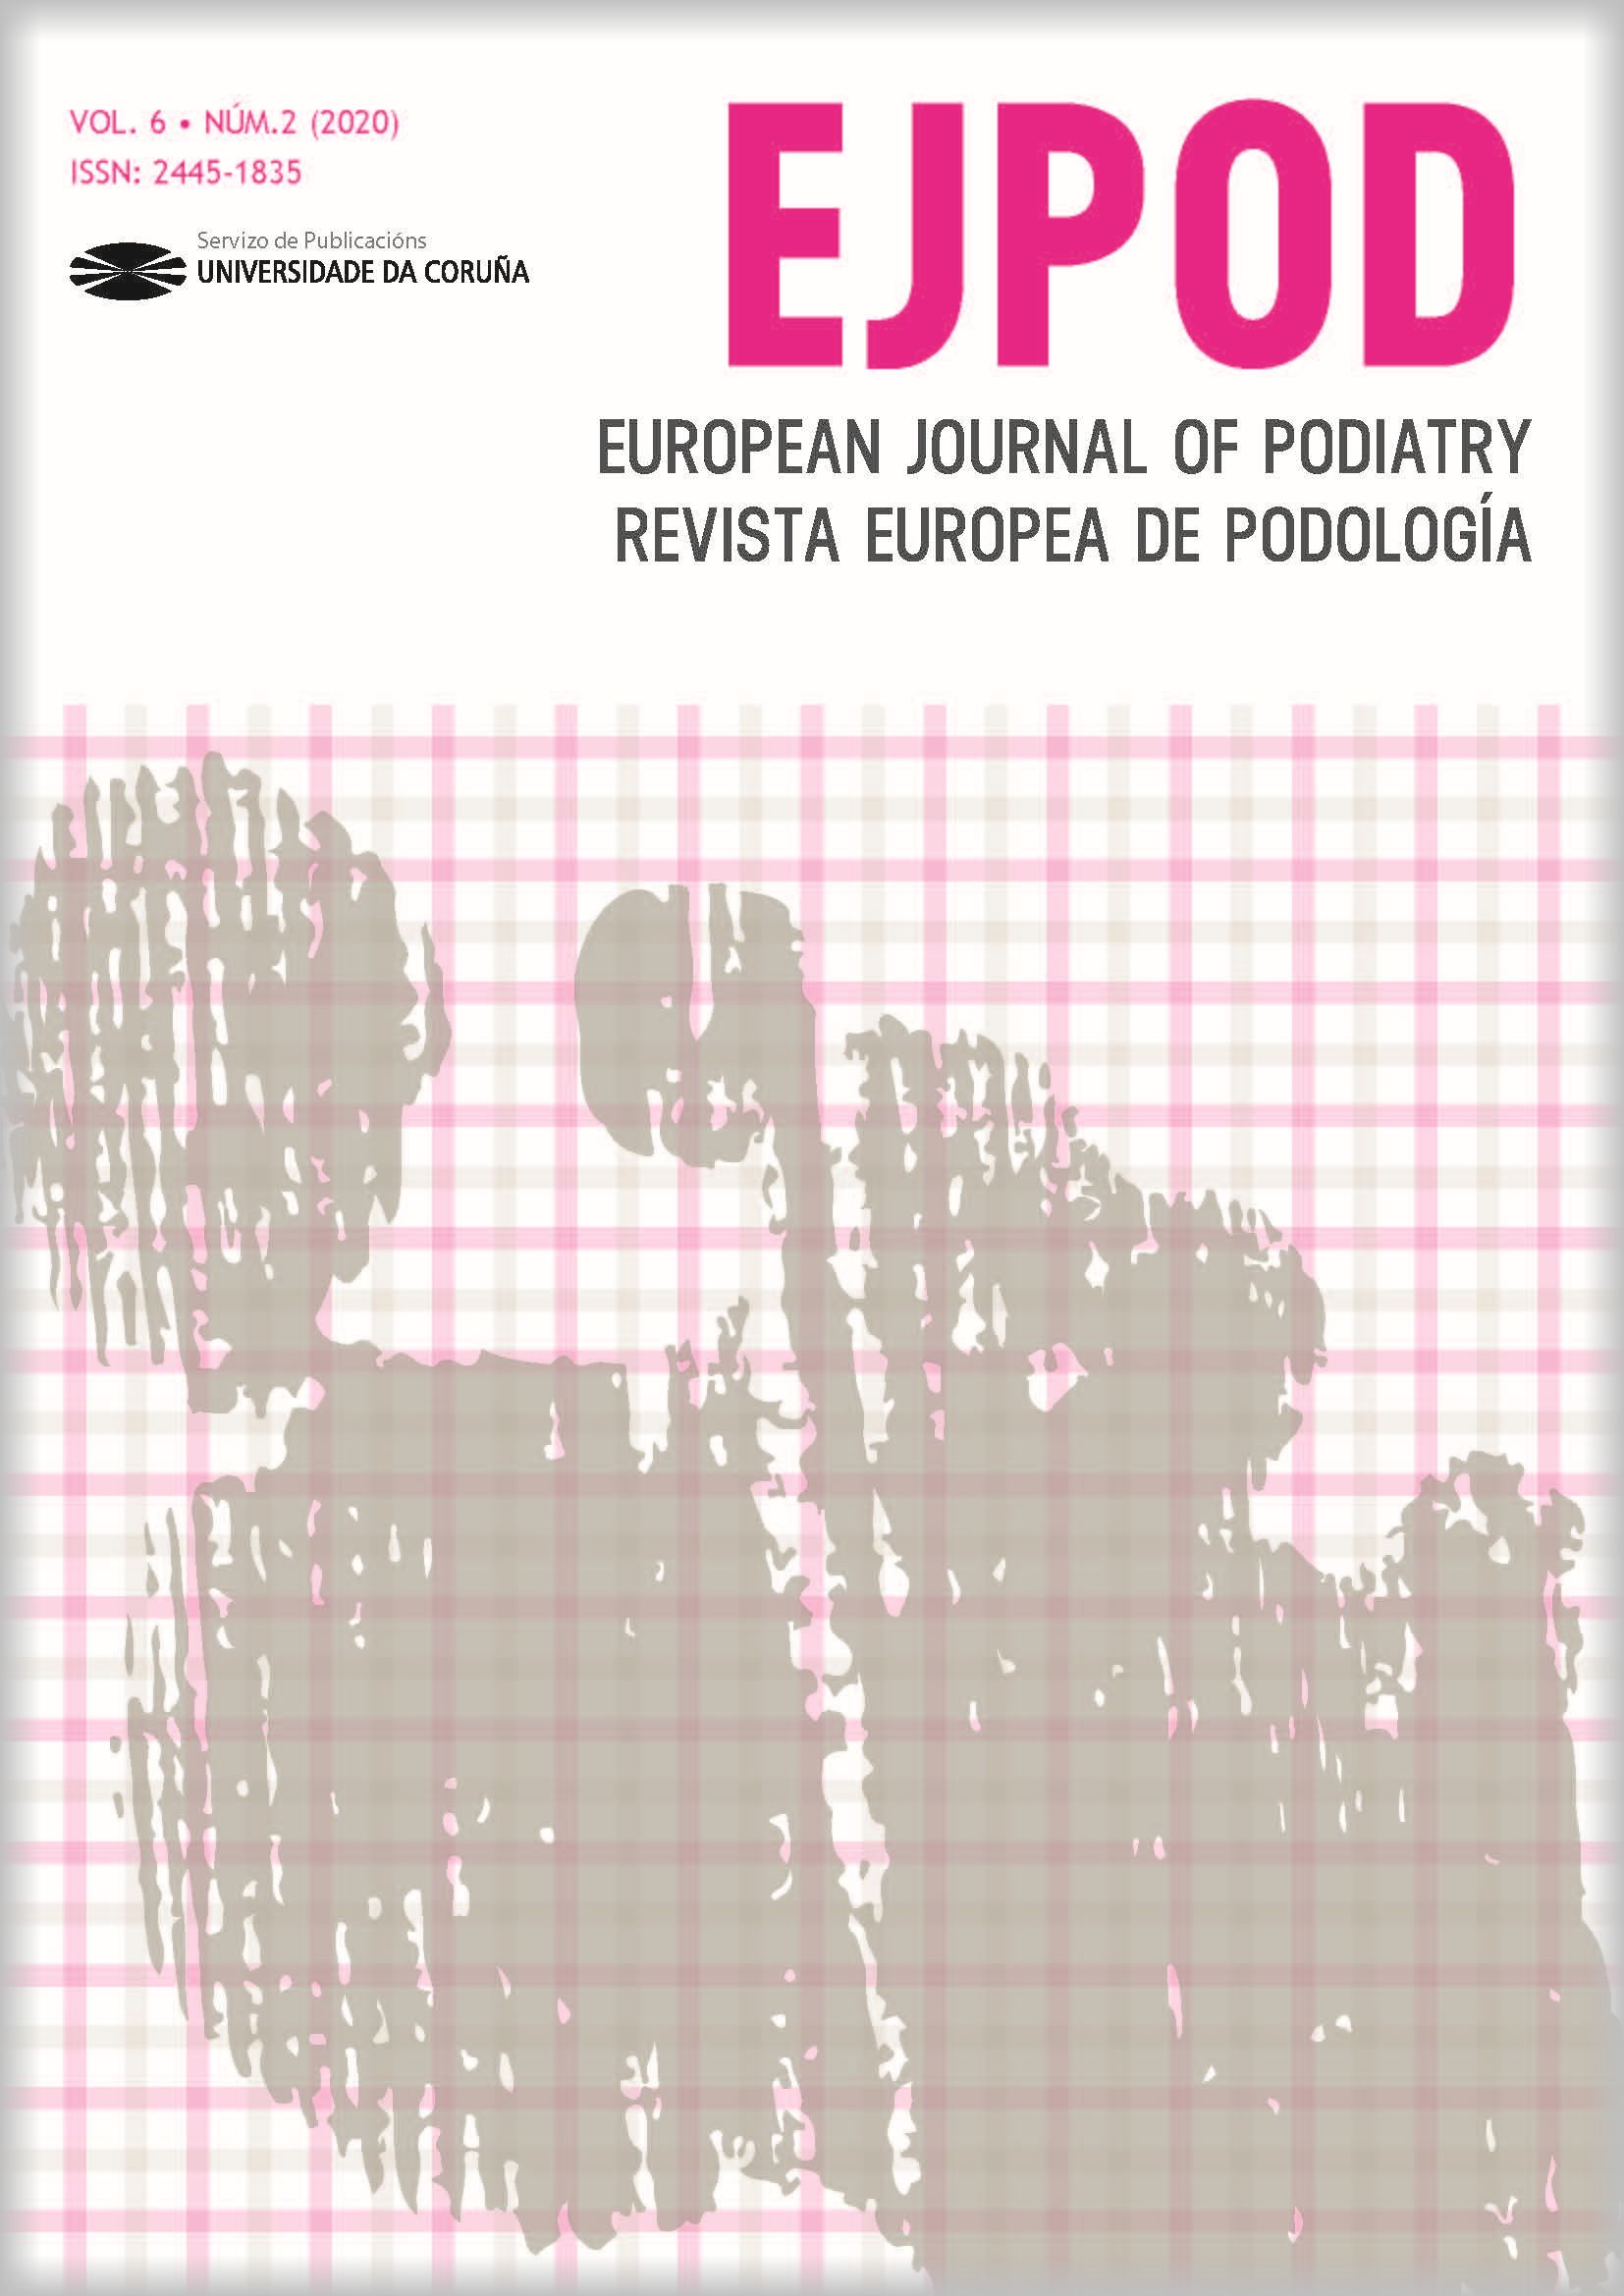 European Journal of Podiatry. Revista Europea de Podología